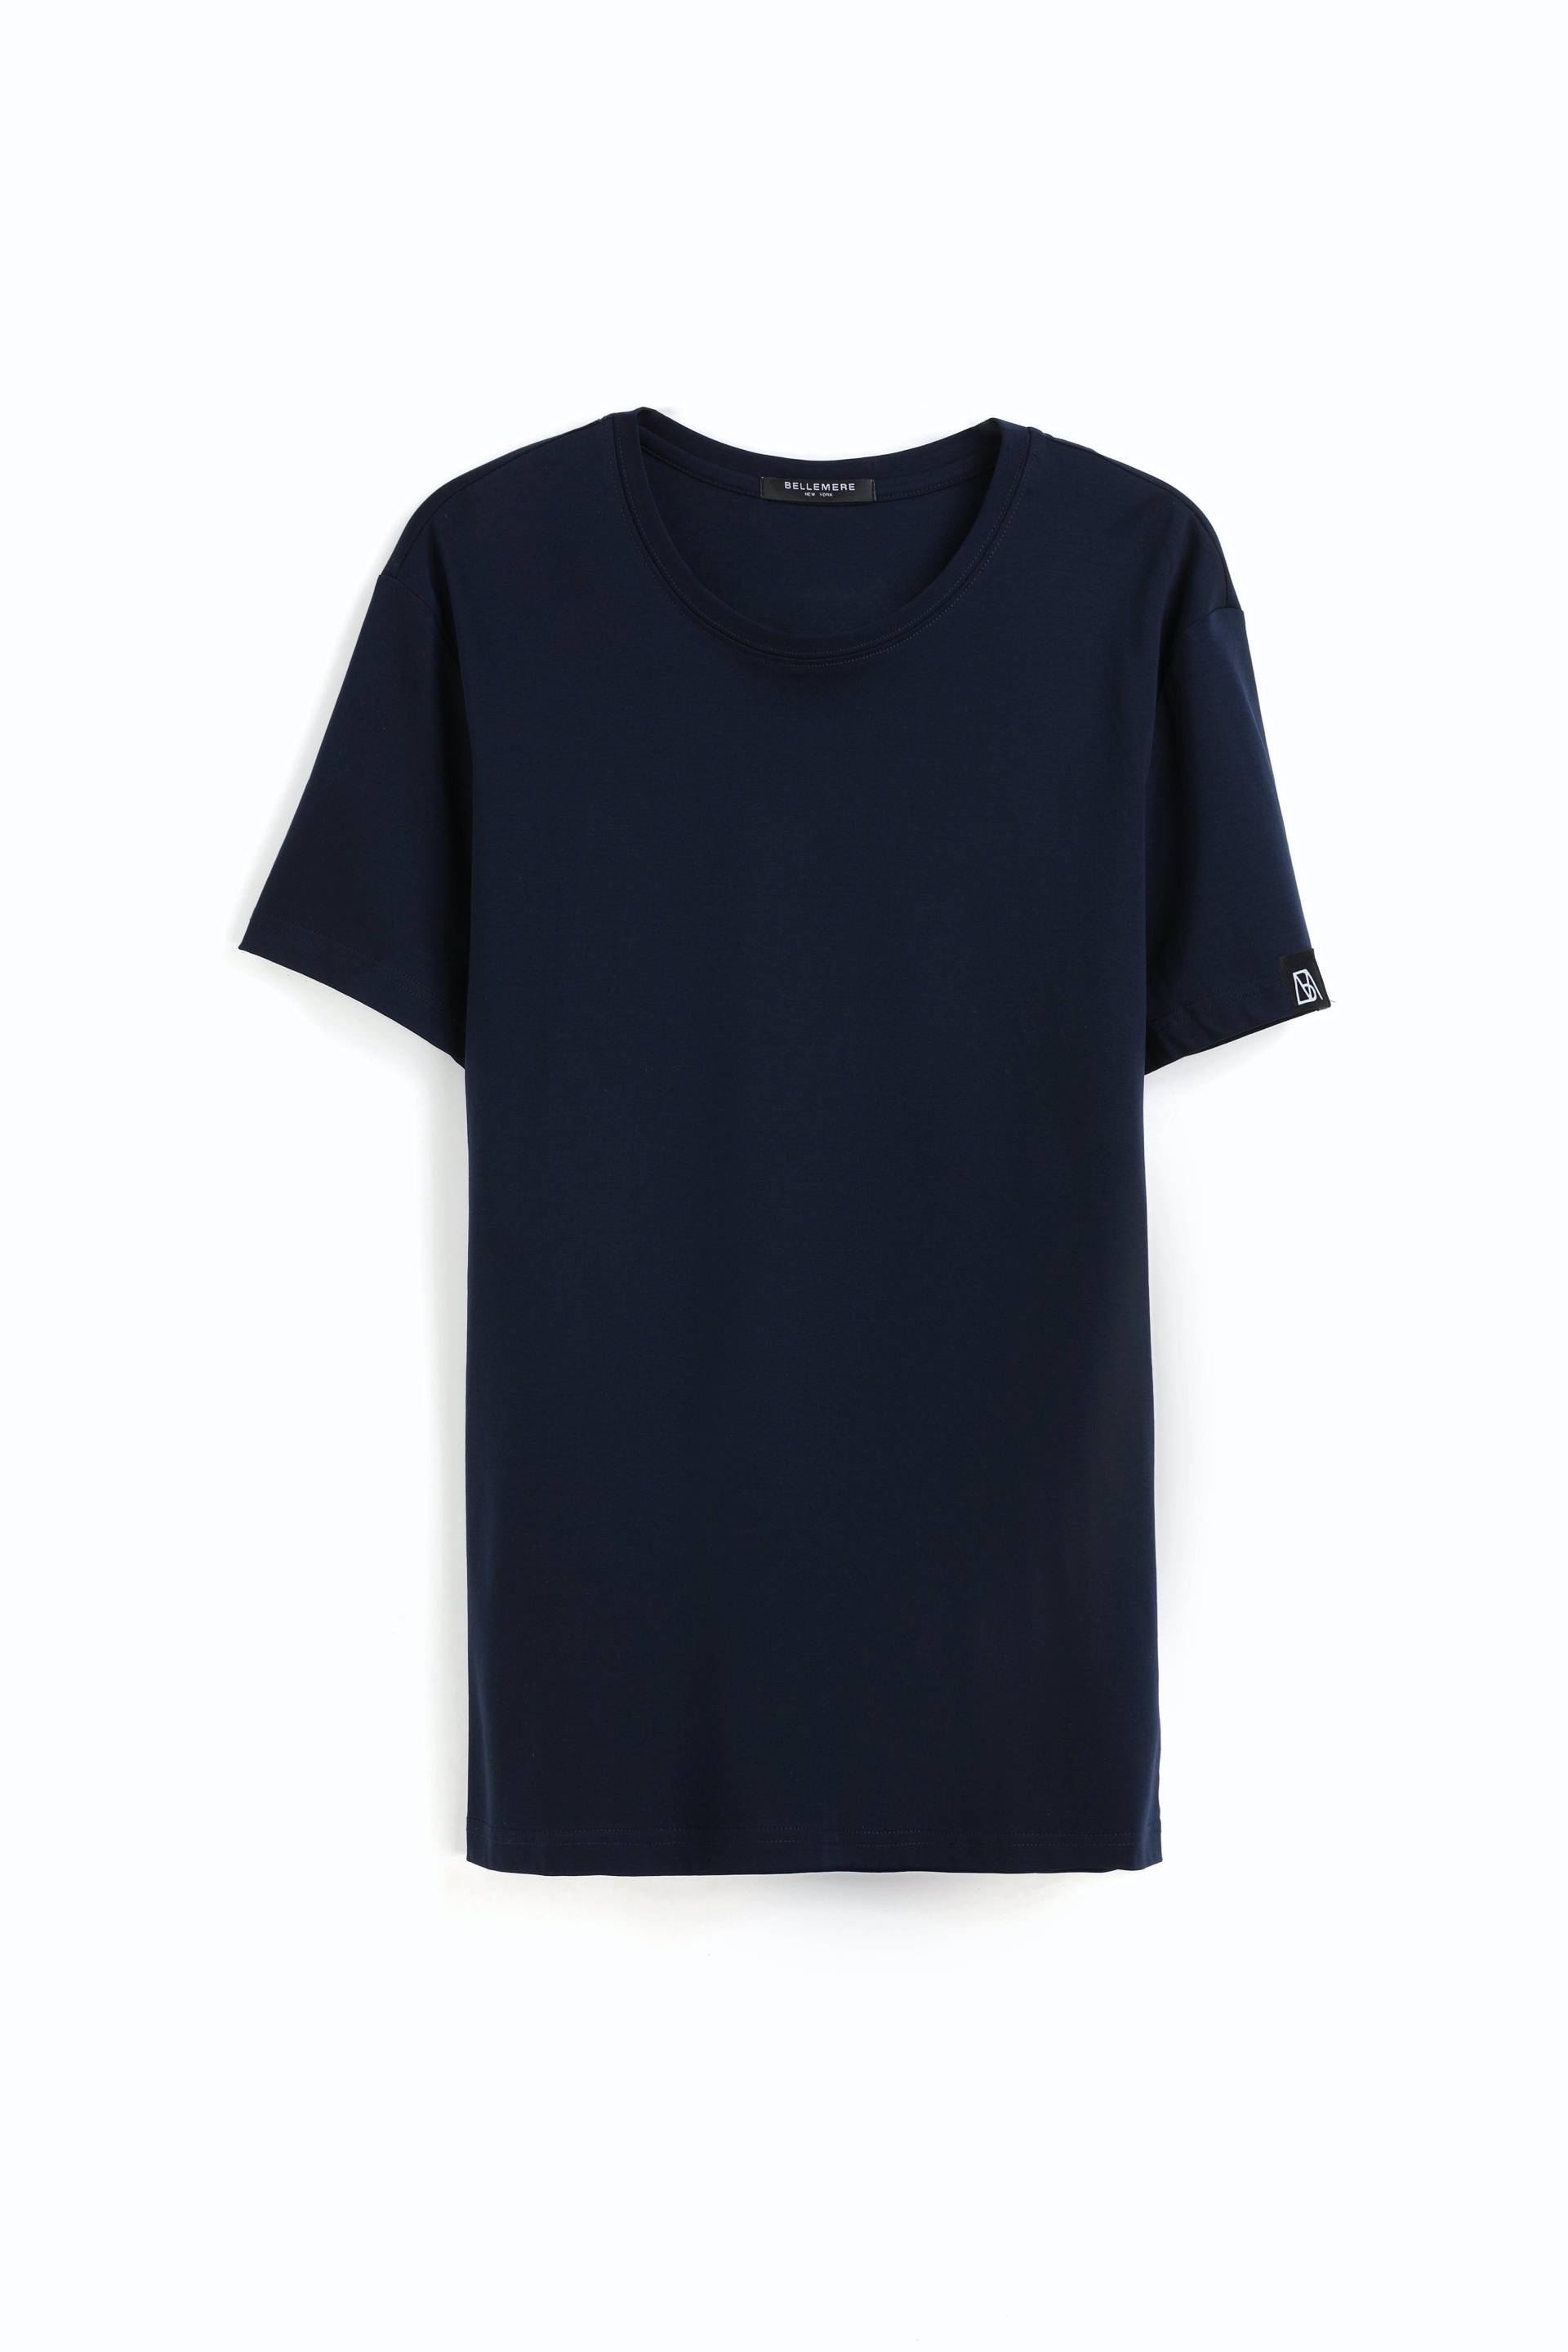 Herren-t-shirt Aus Baumwolle Mit Rundhalsausschnitt, 185 G Herren Blau S von Bellemere New York